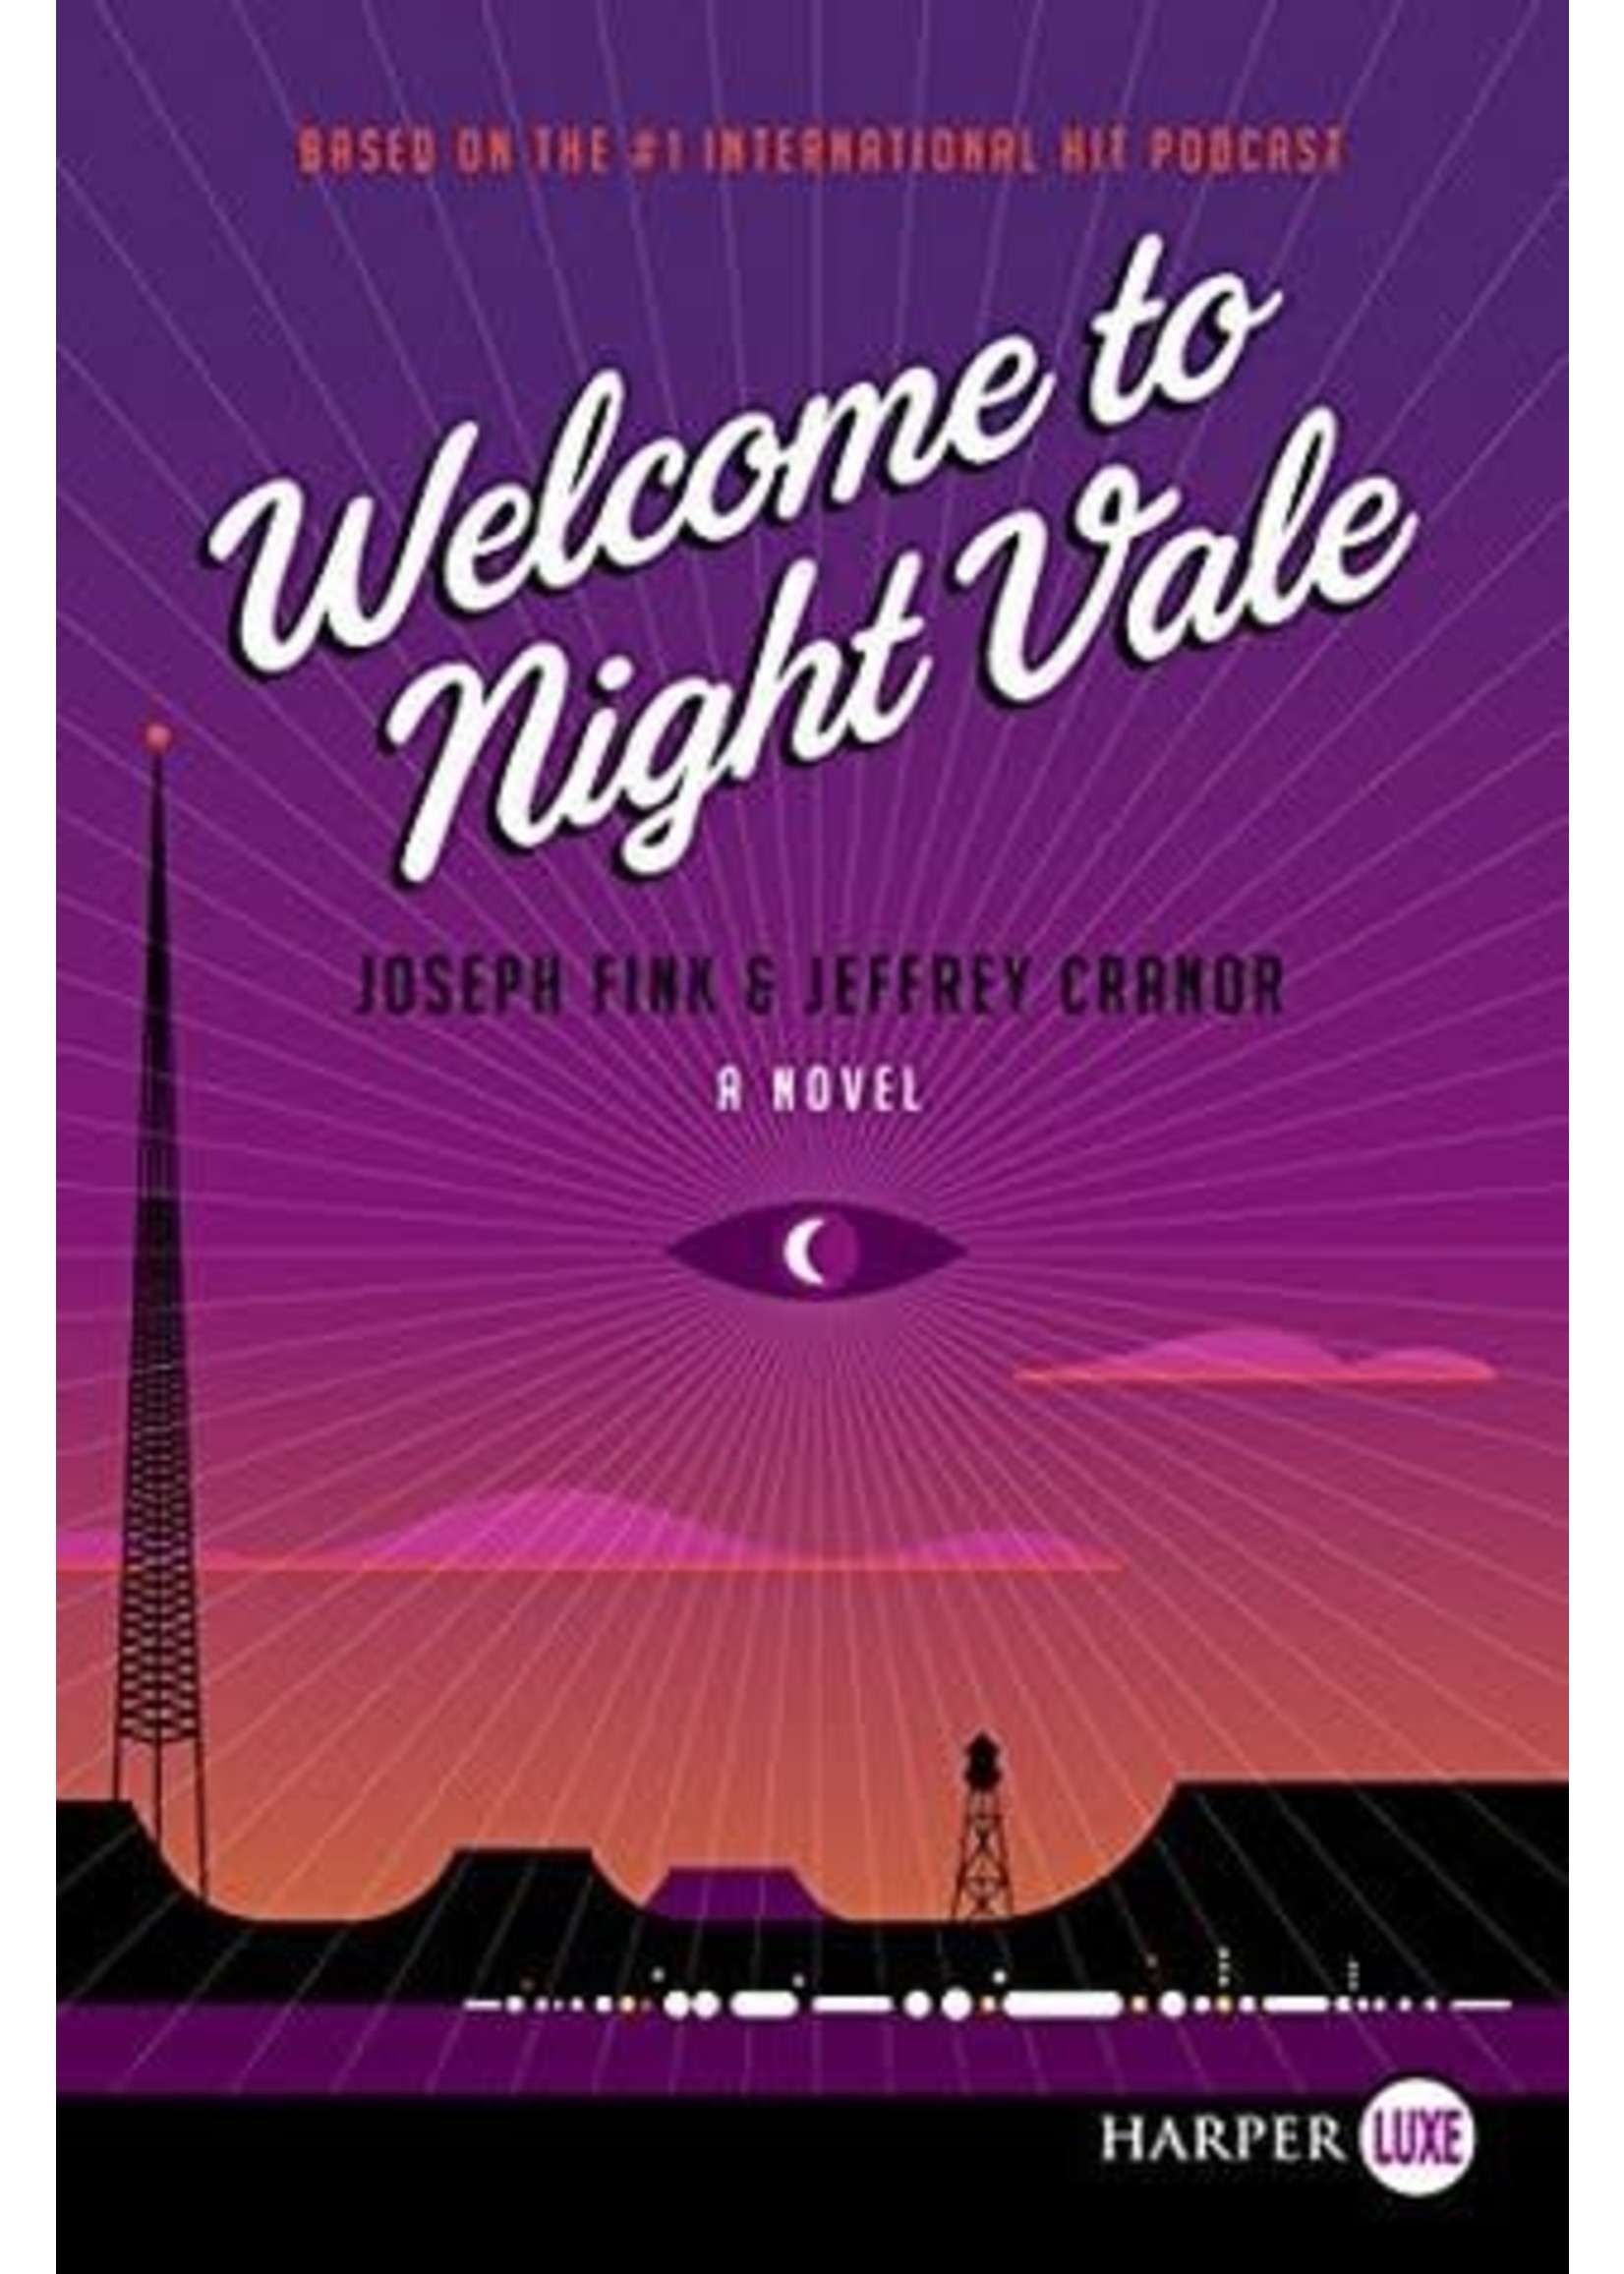 Welcome to Night Vale (Welcome to Night Vale #1) by Joseph Fink